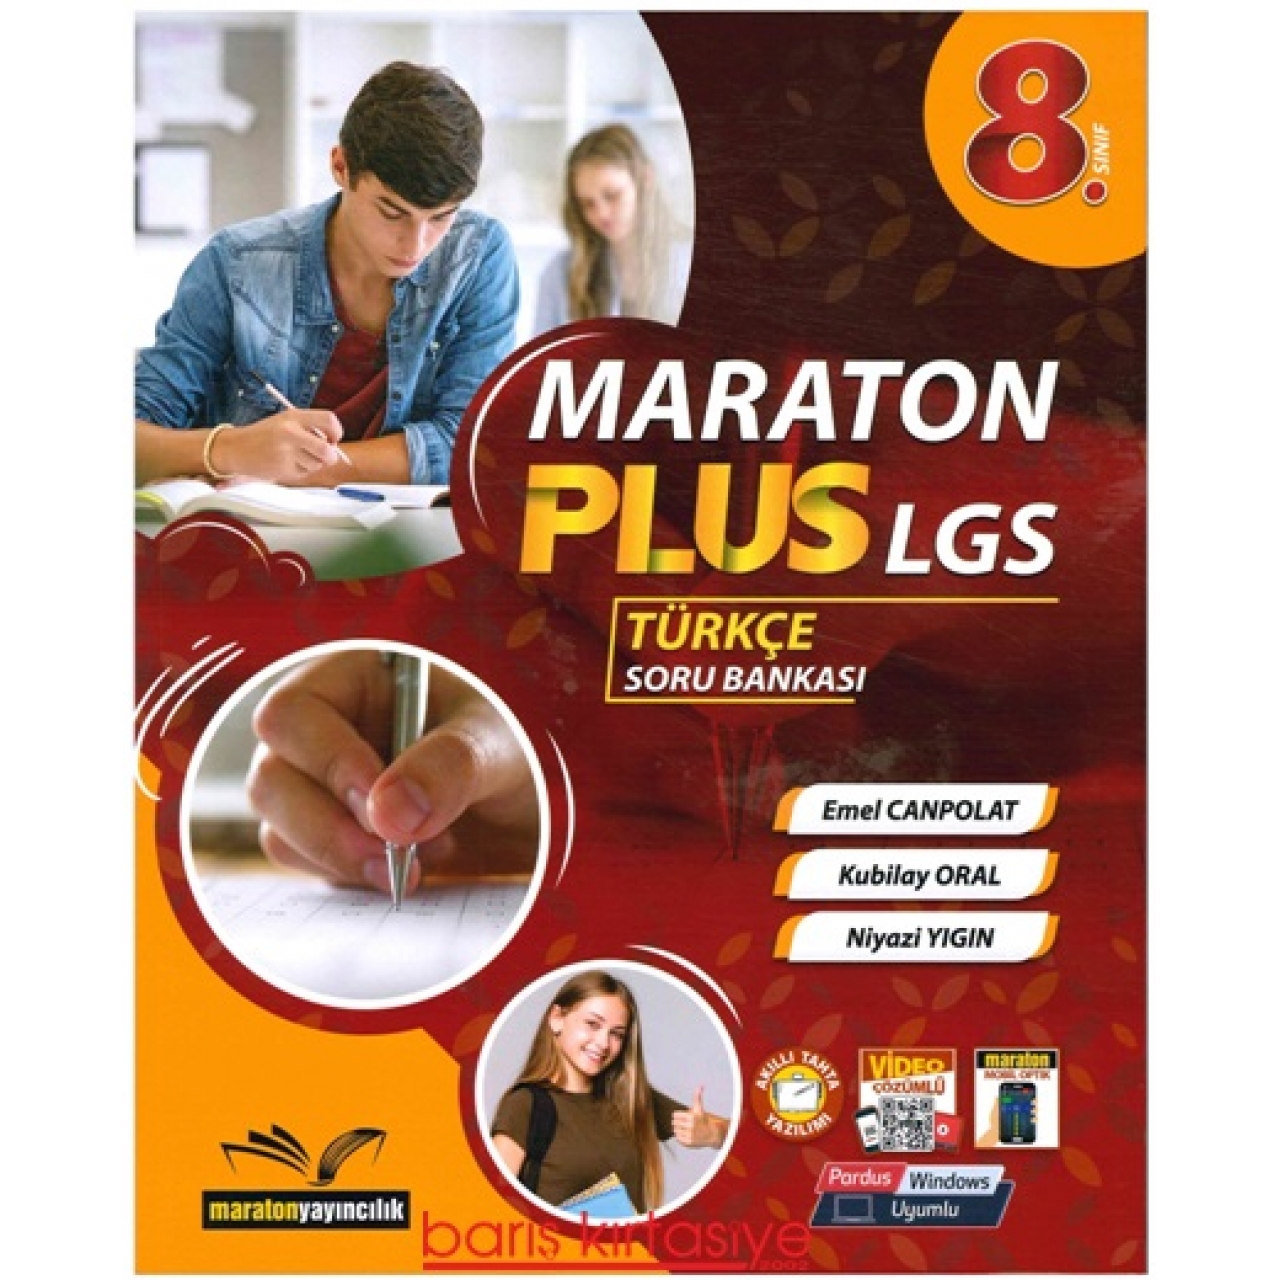 8. Sınıf Maraton Plus LGS Türkçe Soru Bankası Maraton Yayıncılık